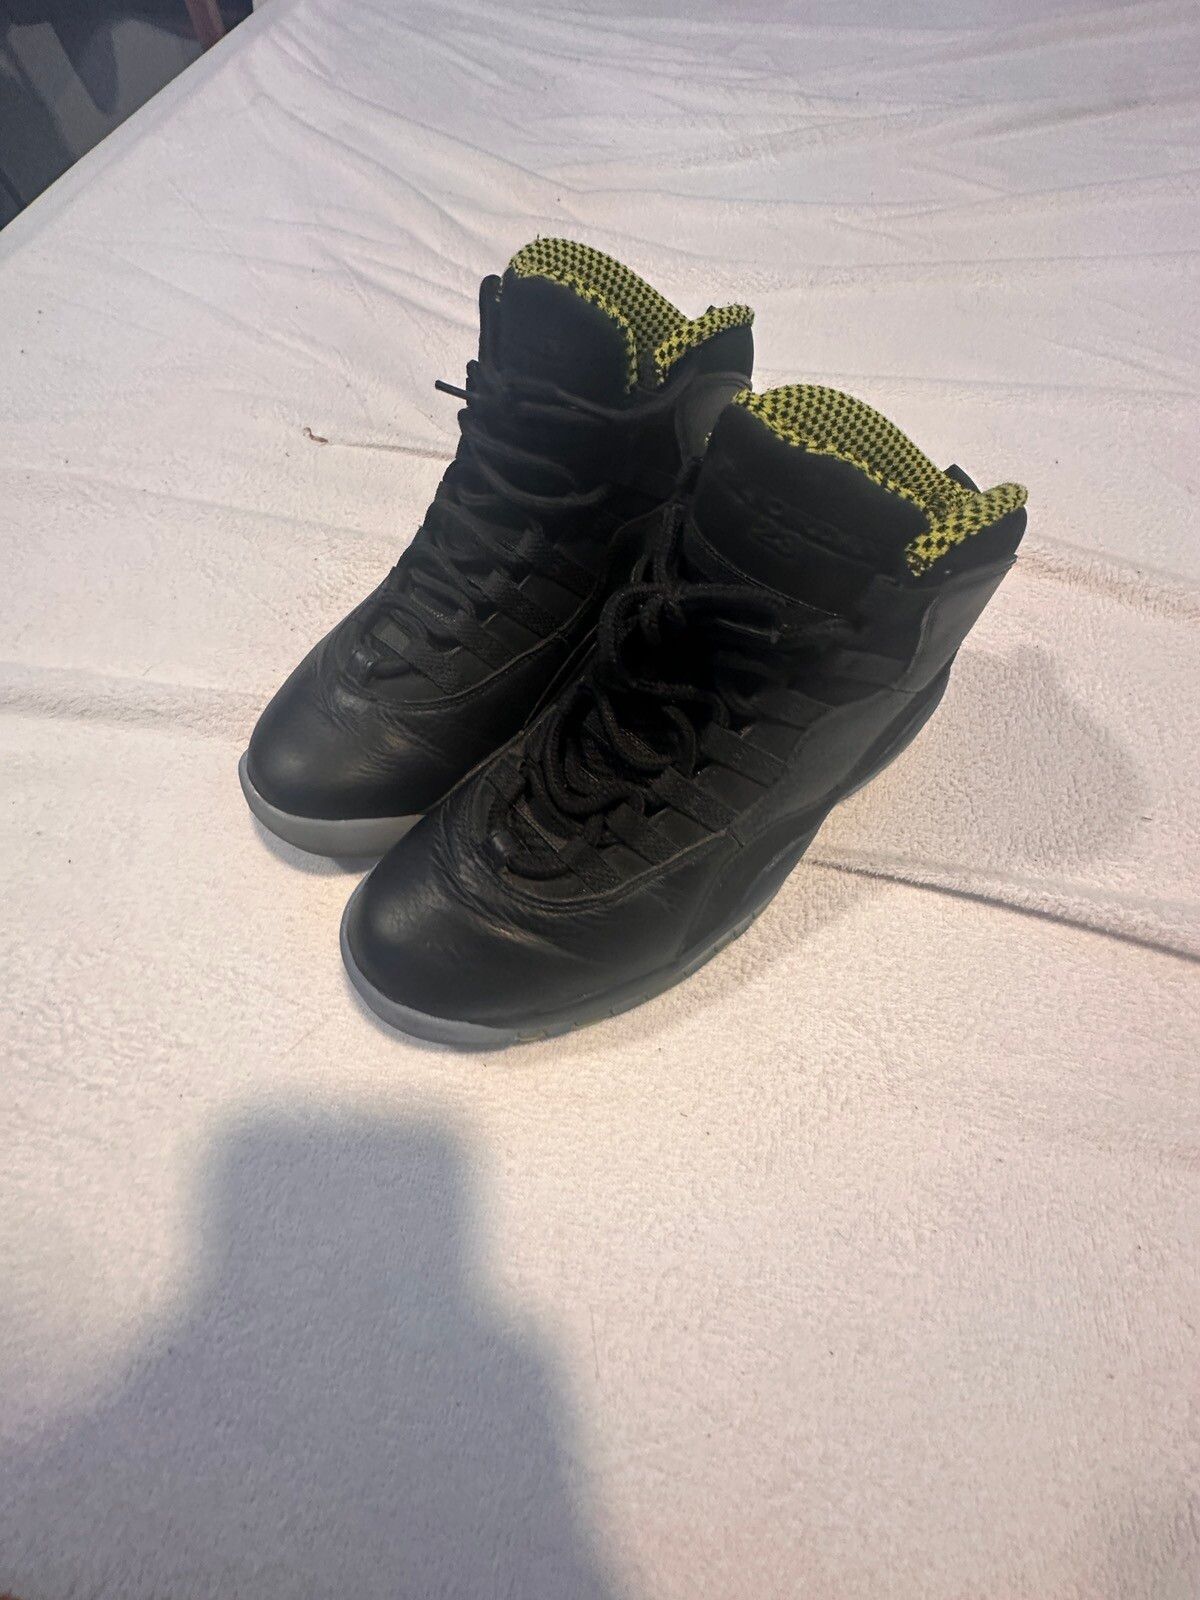 Nike Jordan retro 10 venoms Size US 8.5 / EU 41-42 - 2 Preview